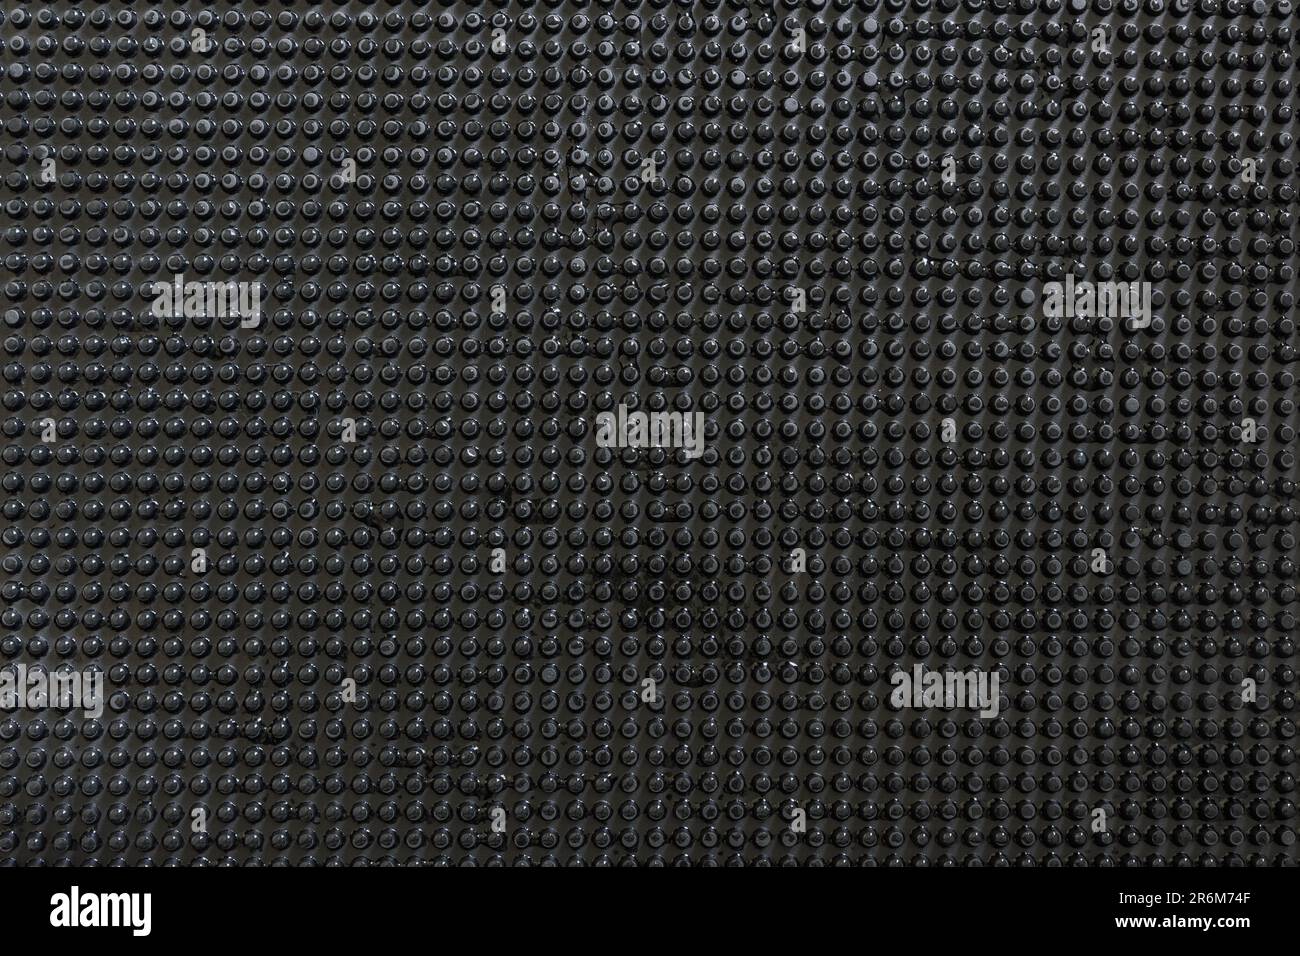 Arrière-plan abstrait grille à points noirs avec lumière goutte d'eau vive. Banque D'Images